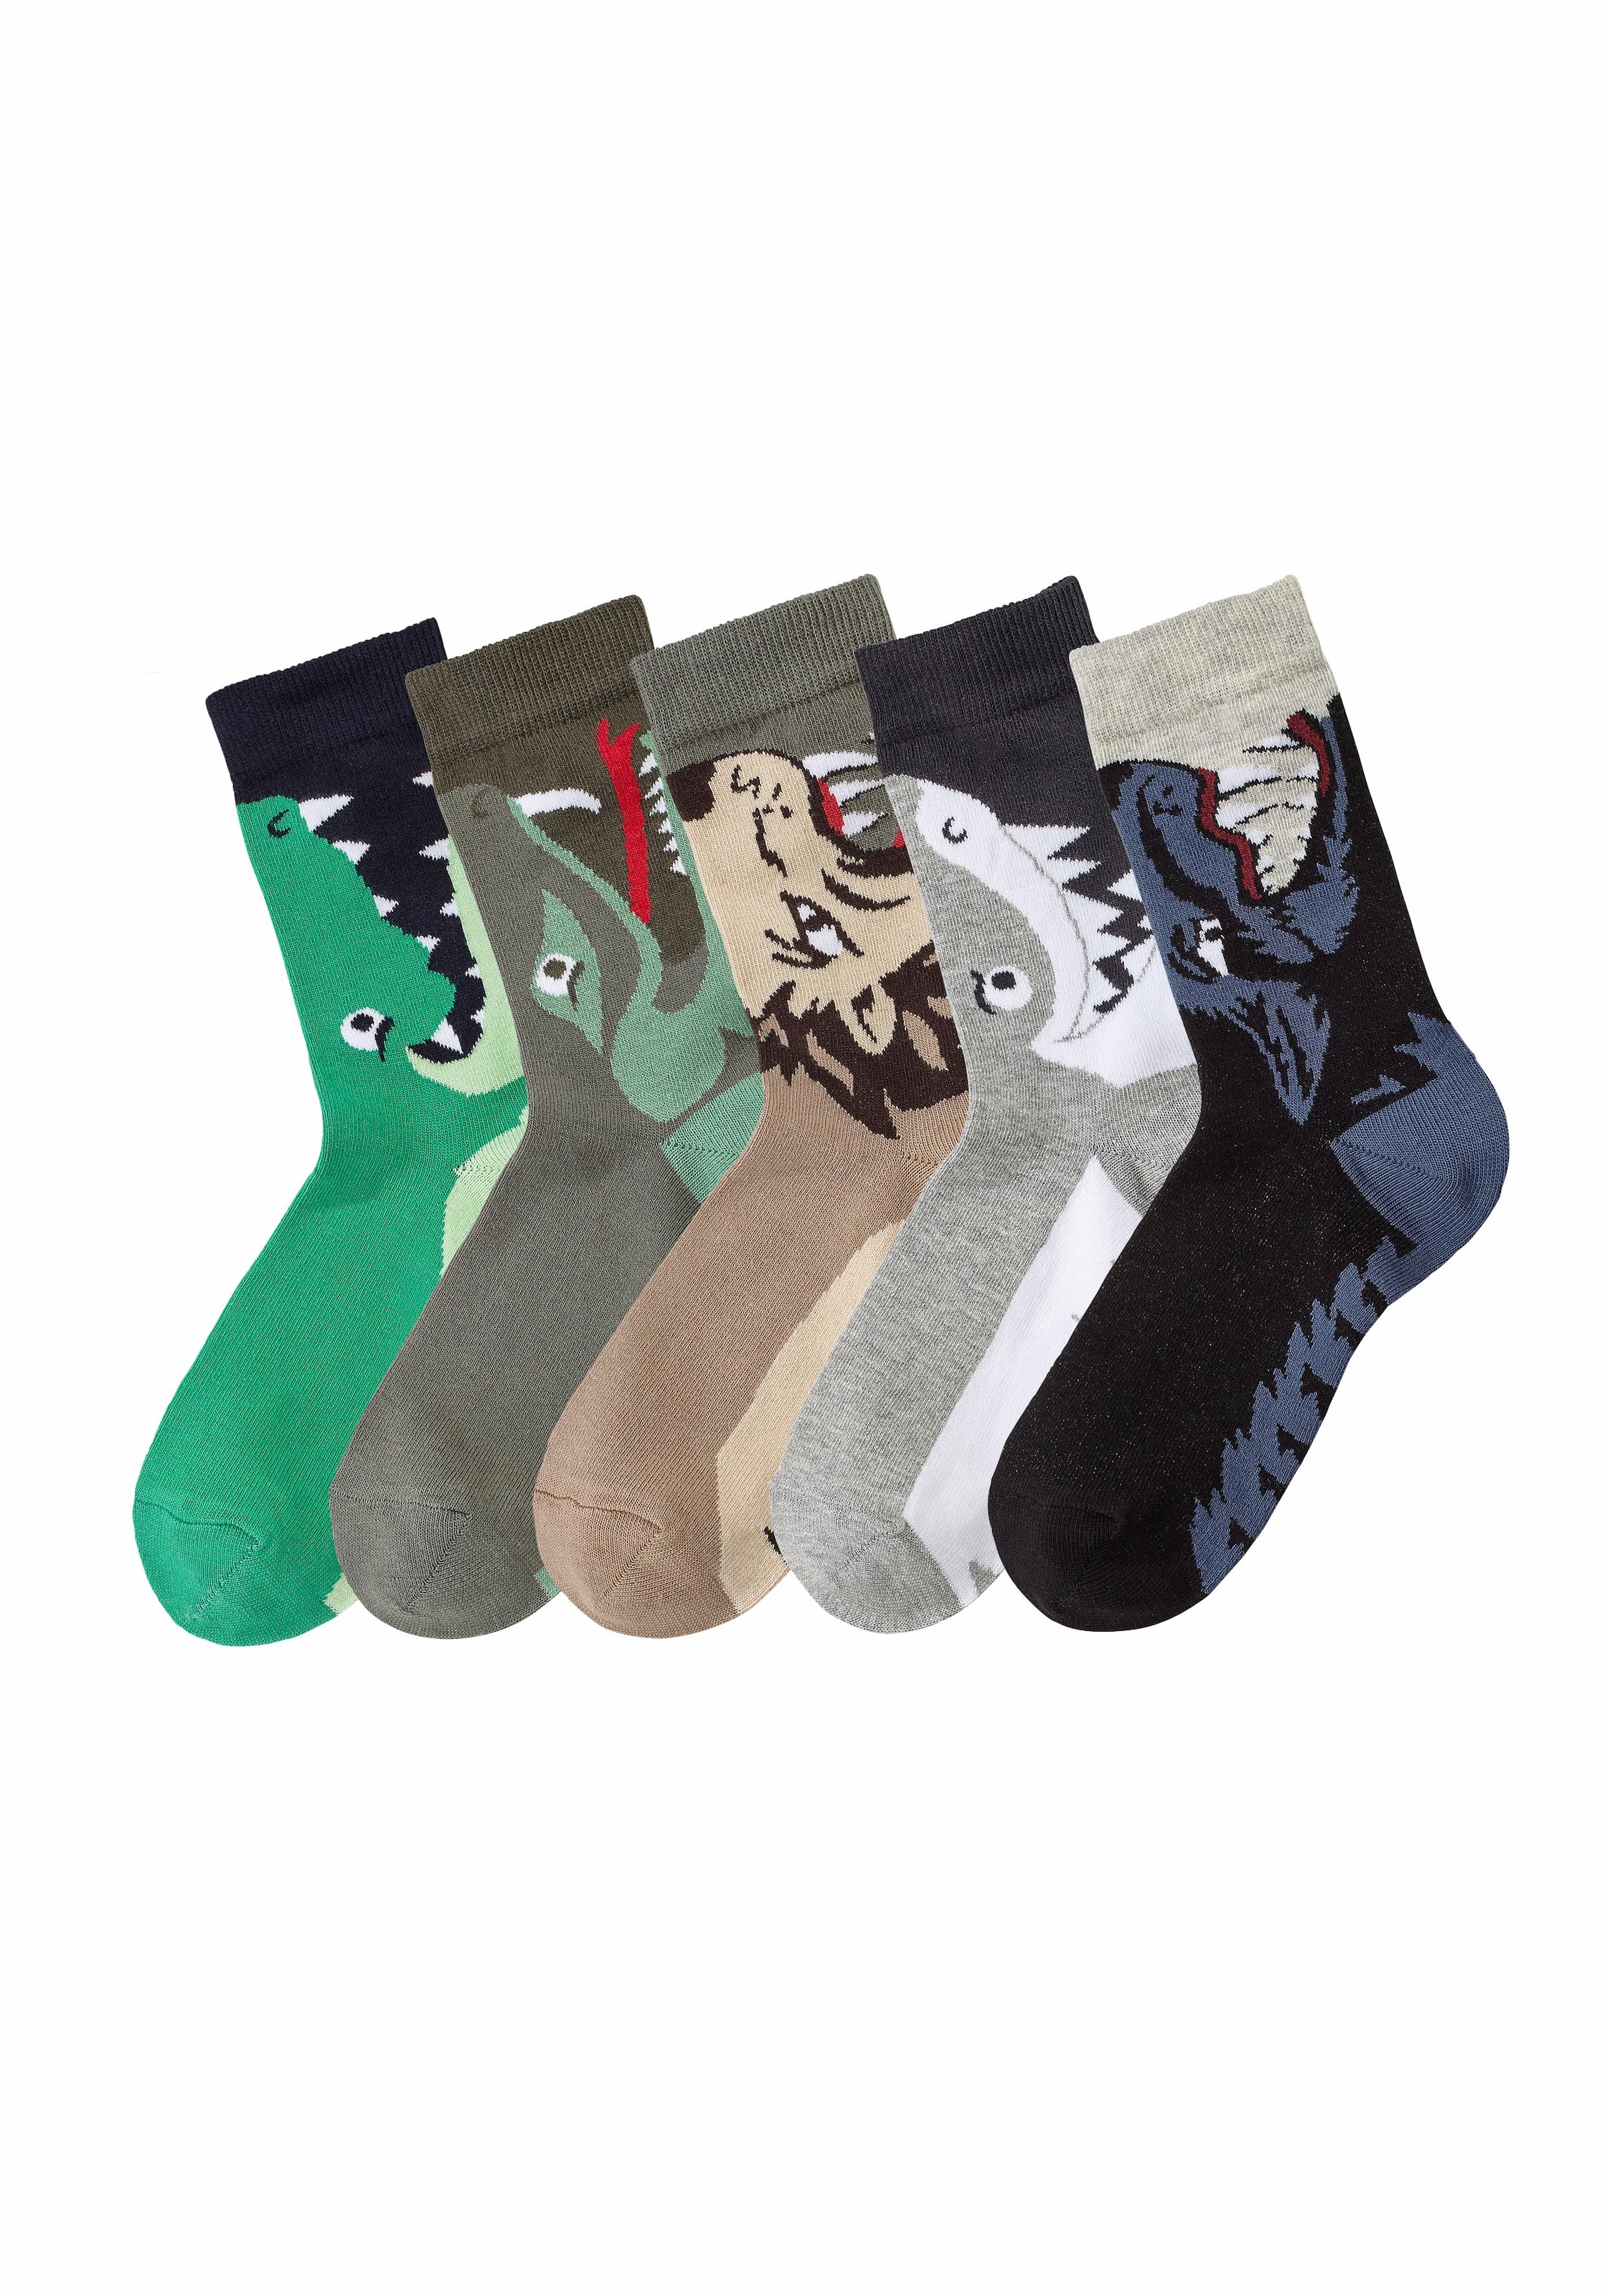 Socken, (5 Paar), mit ♕ bei Tiermotiven